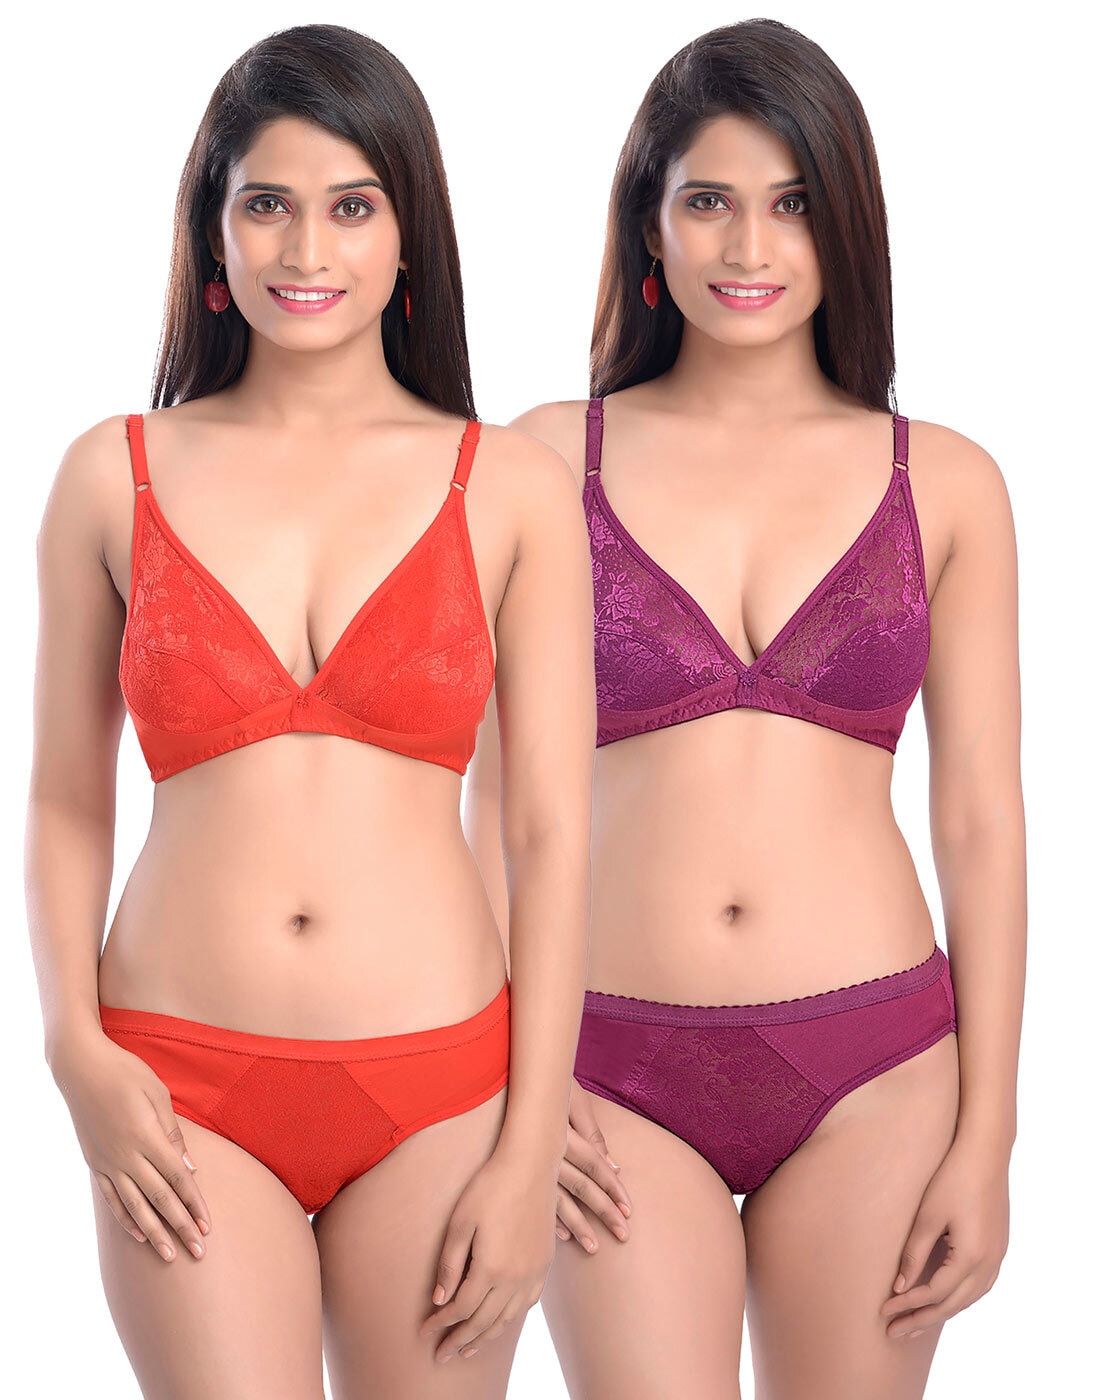 FelinSoul Women's Sexy Plus Size Lingerie Set, 2 Piece India